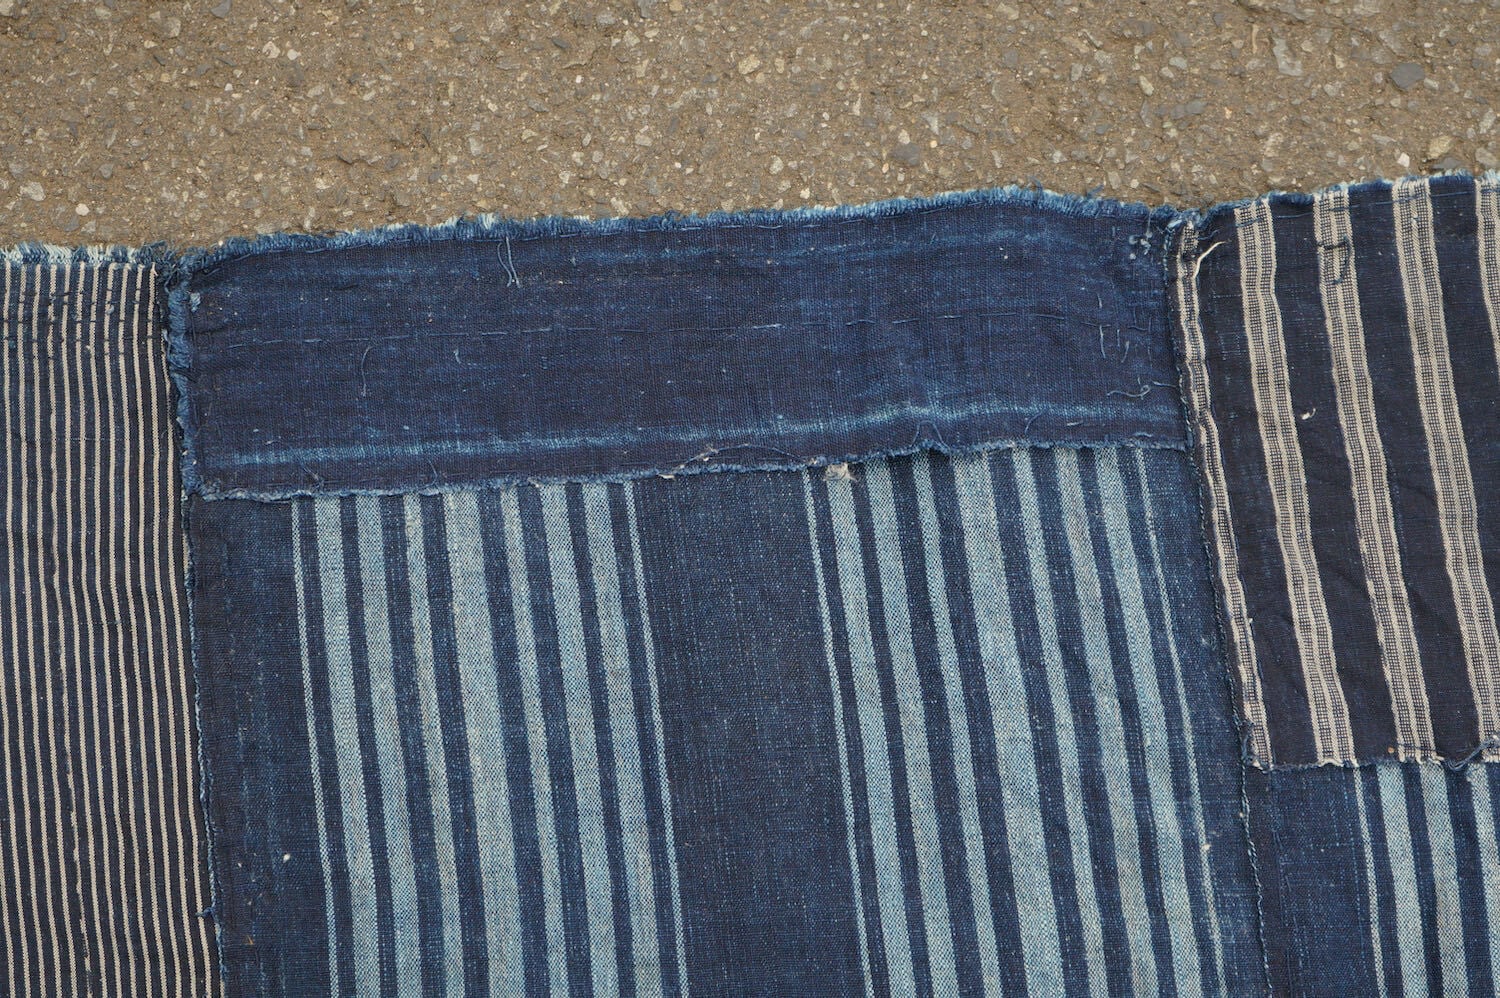 734 縞木綿 ボロ 襤褸 藍染 木綿 古布 継ぎ接ぎ 継ぎ当て アンティーク 